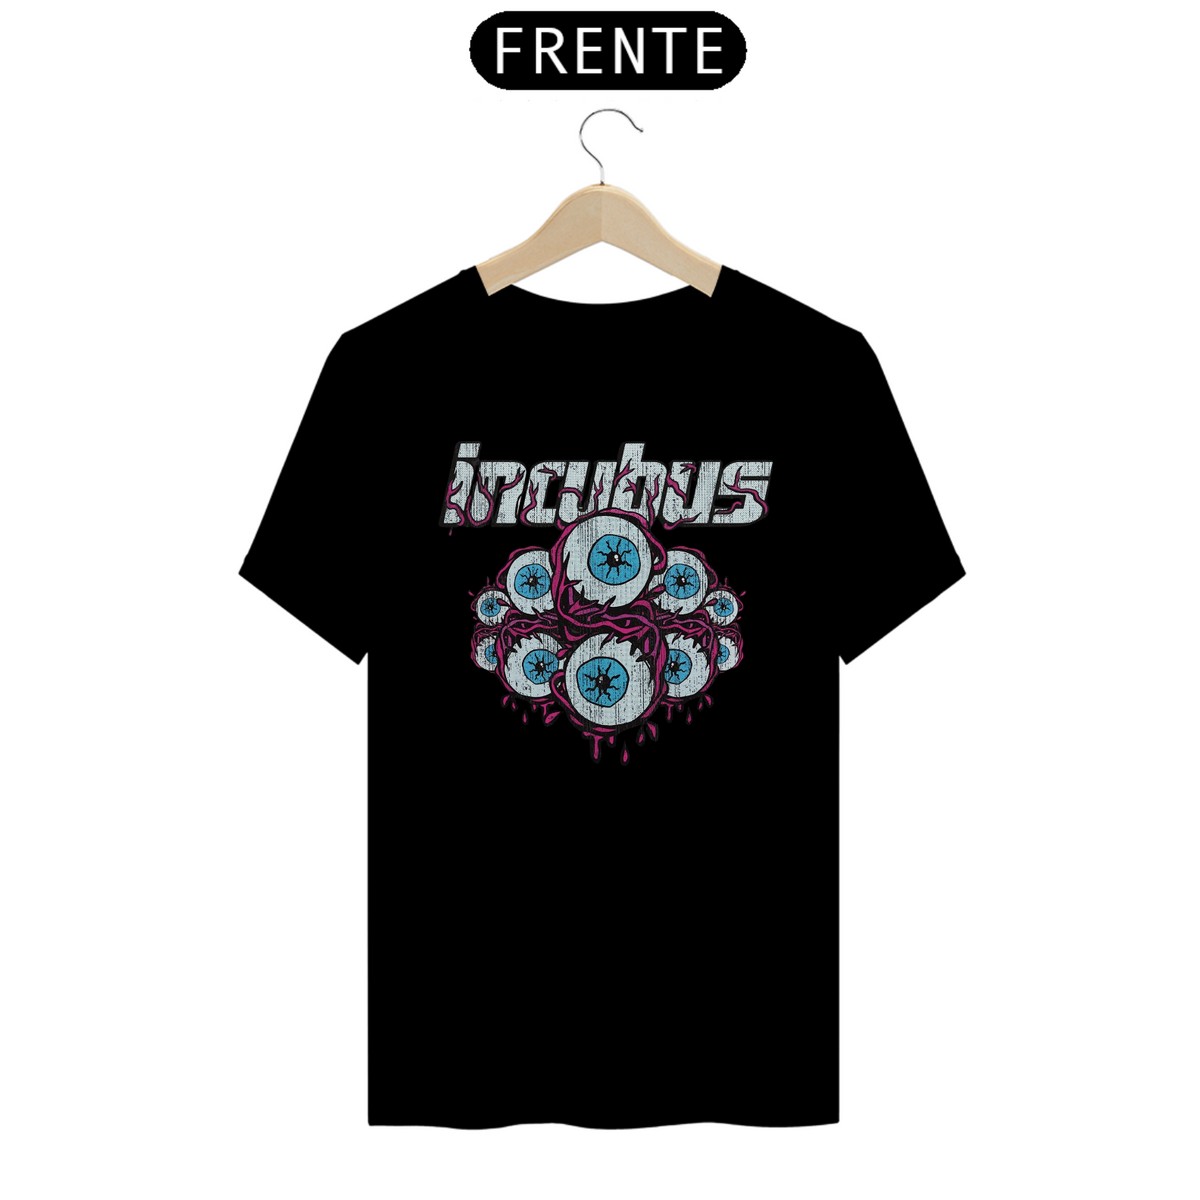 Nome do produto: Incubus